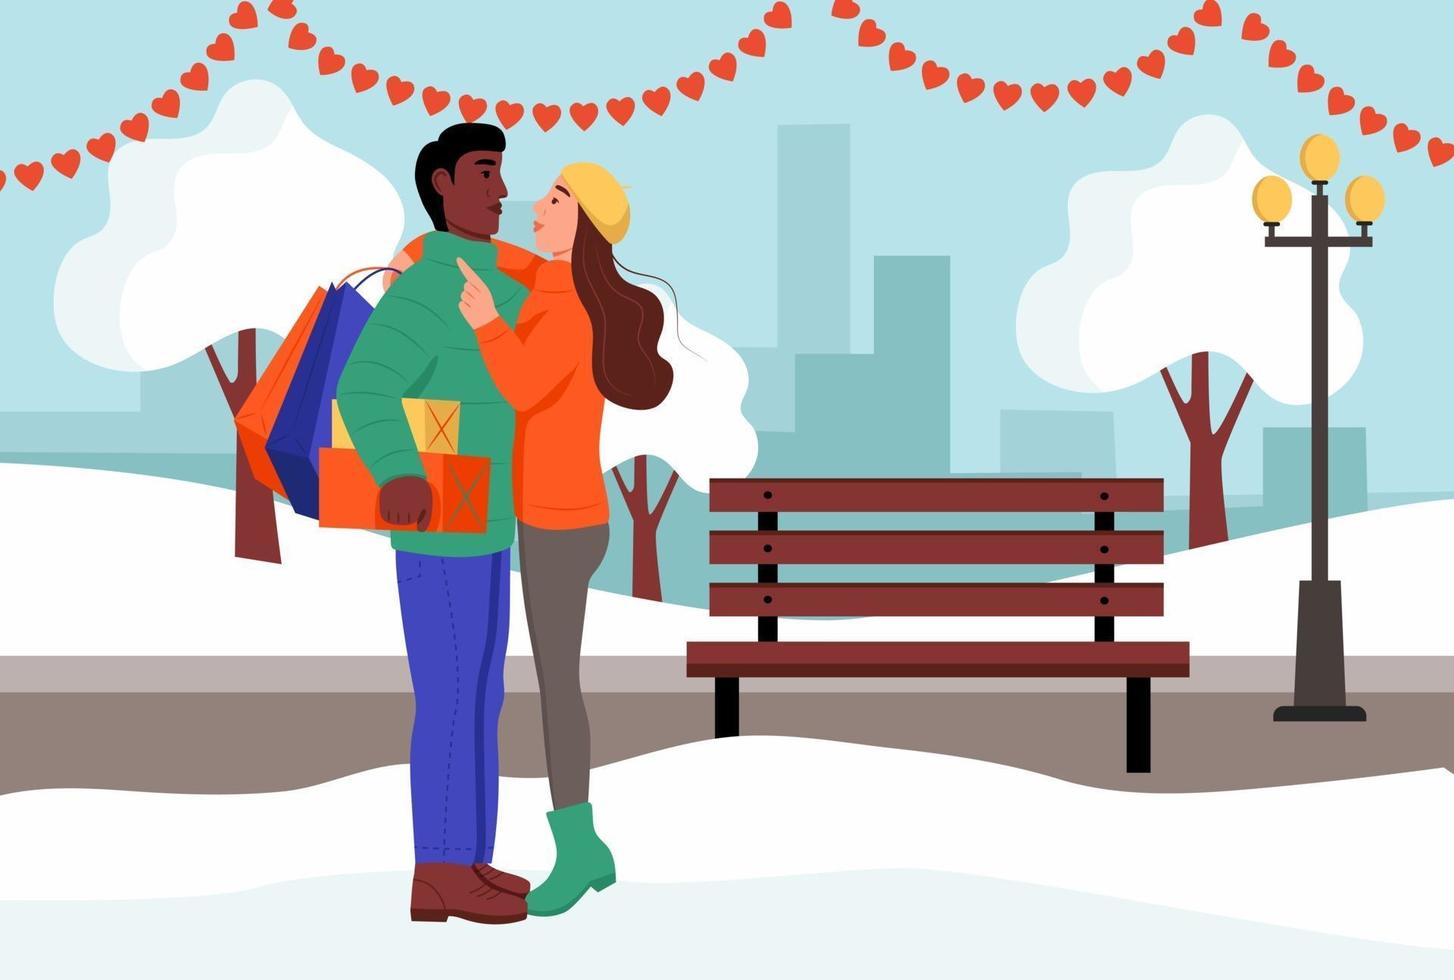 una pareja amorosa se abraza en un parque el día de San Valentín. joven y mujer con regalos y paquetes de la tienda. ilustración vectorial plana. vector